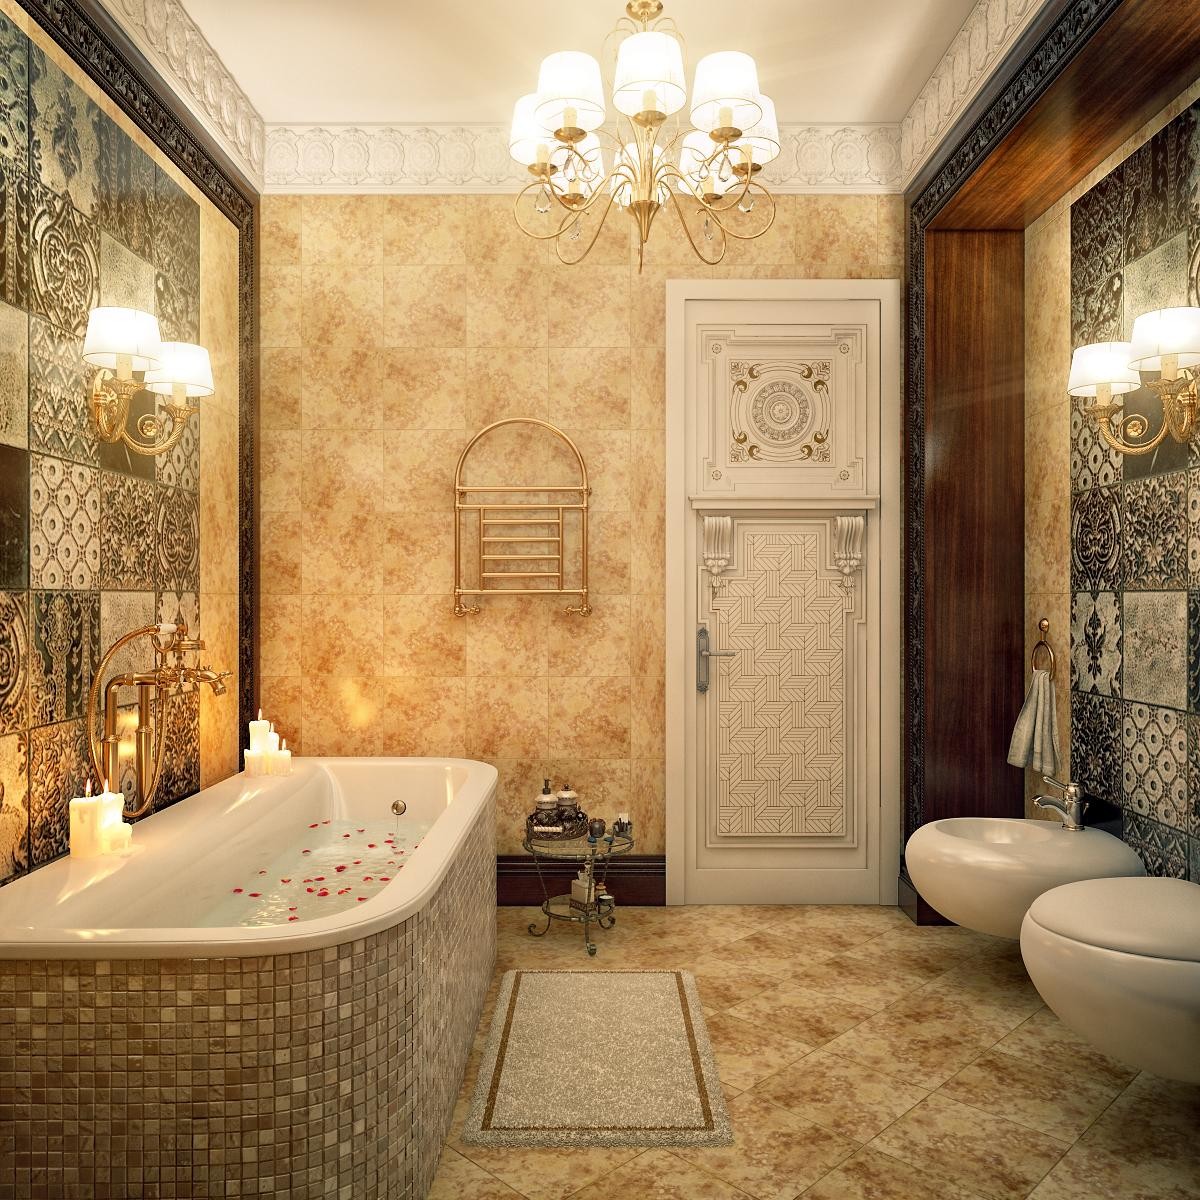 Gợi ý 10 phong cách thiết kế phòng tắm đẹp nhất hiện nay